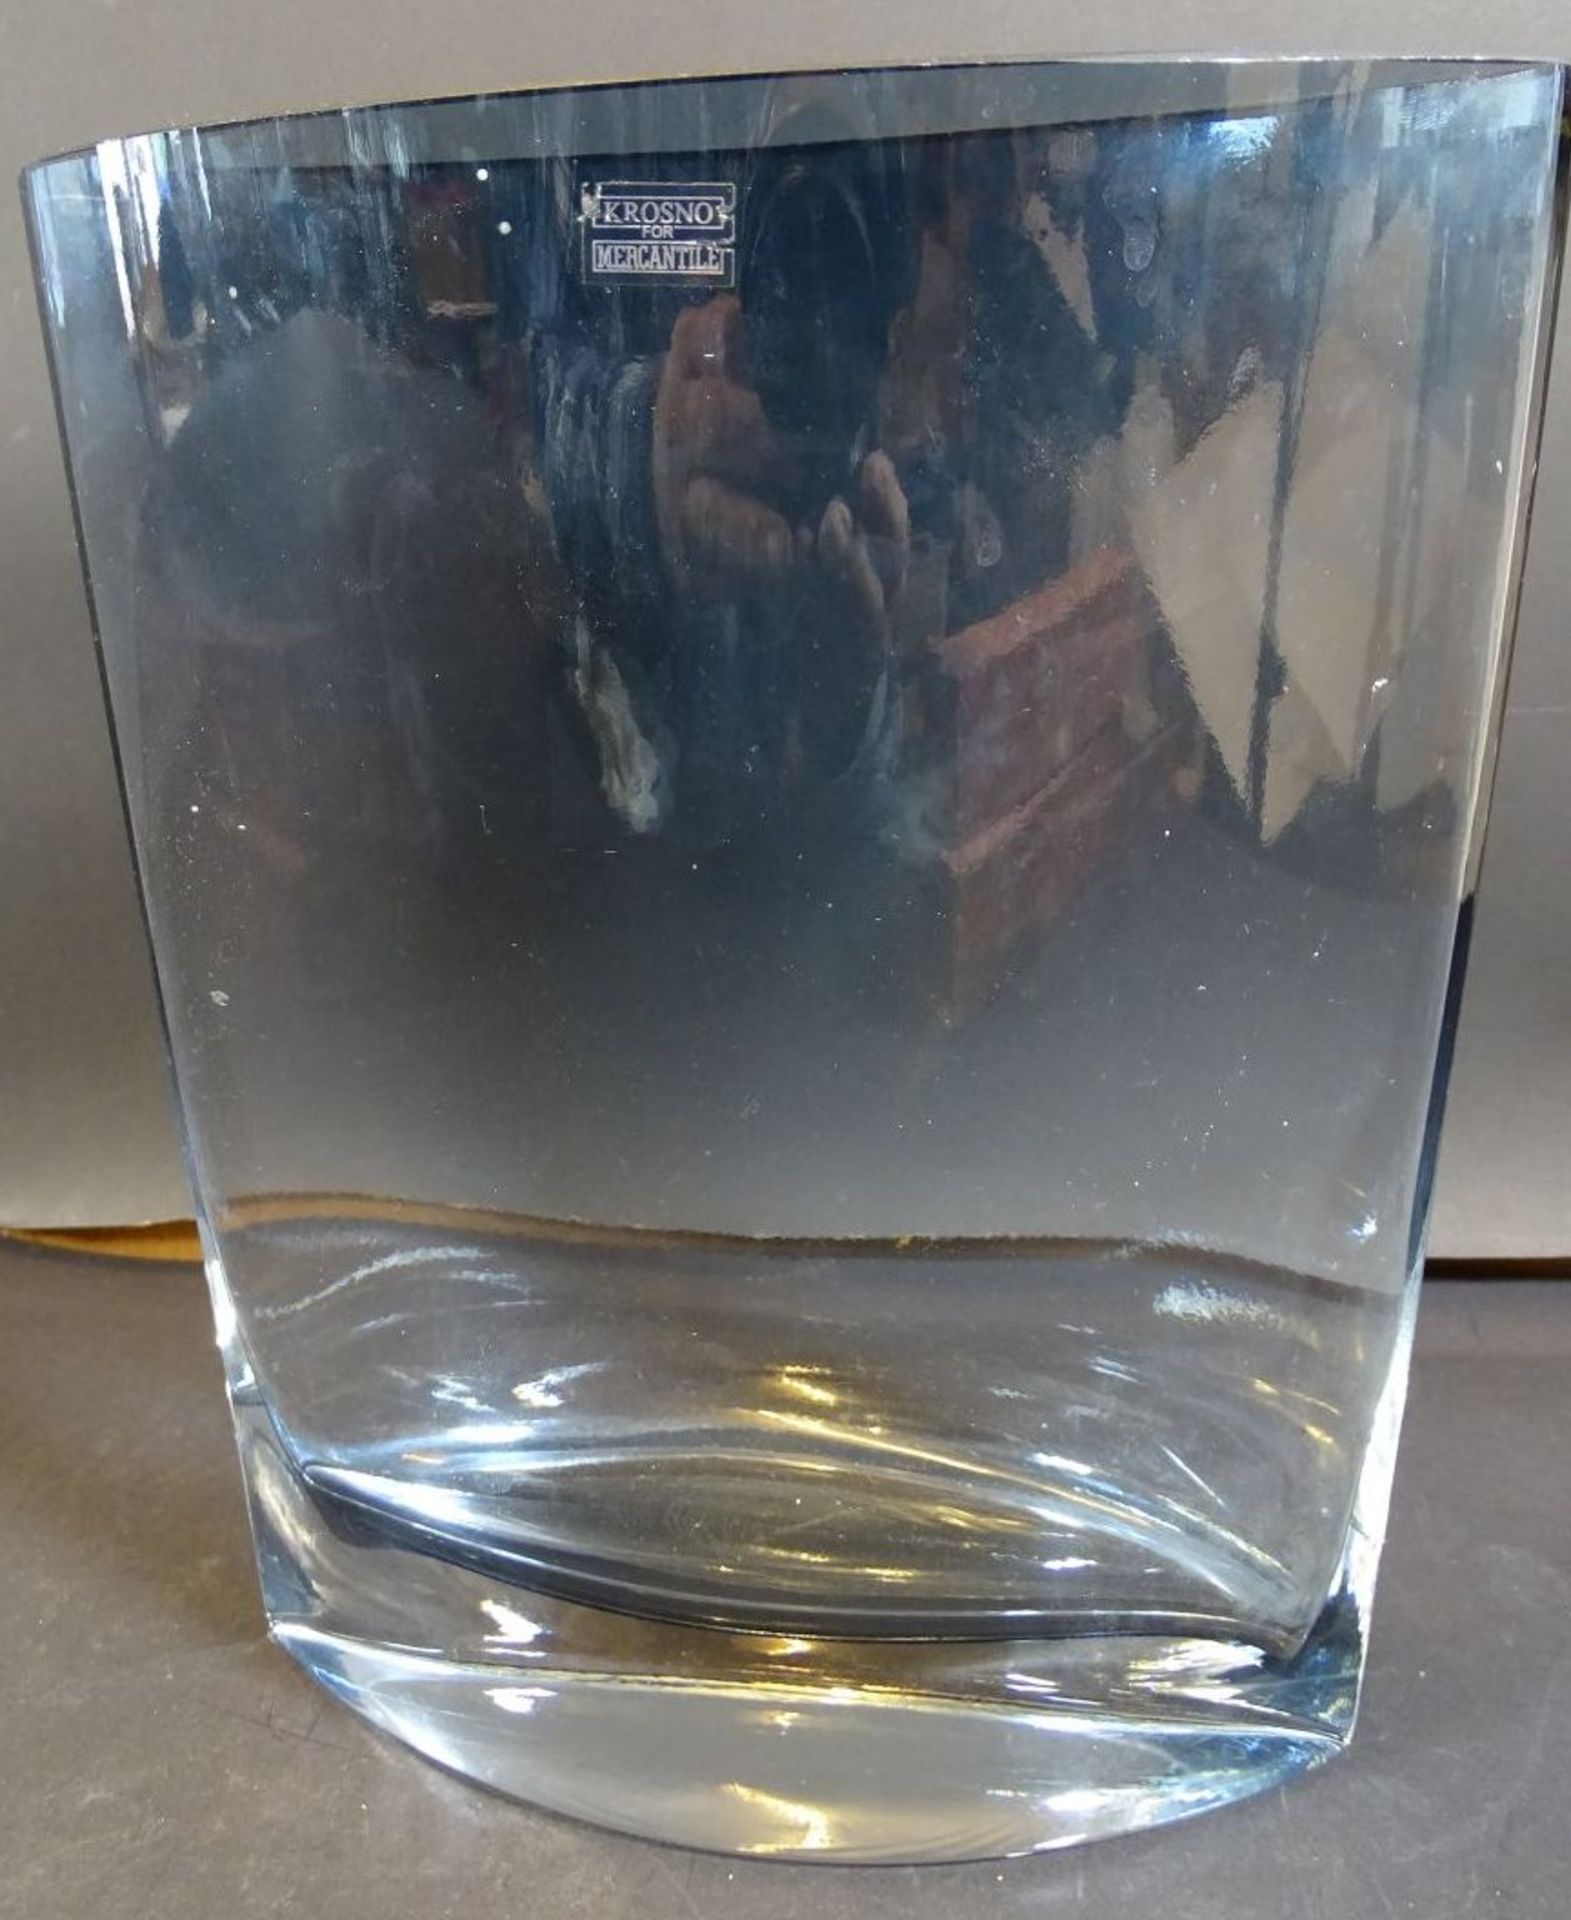 gr. ovoide Vase "Krosno for Mercantile", H-24 cm, B-19 cm